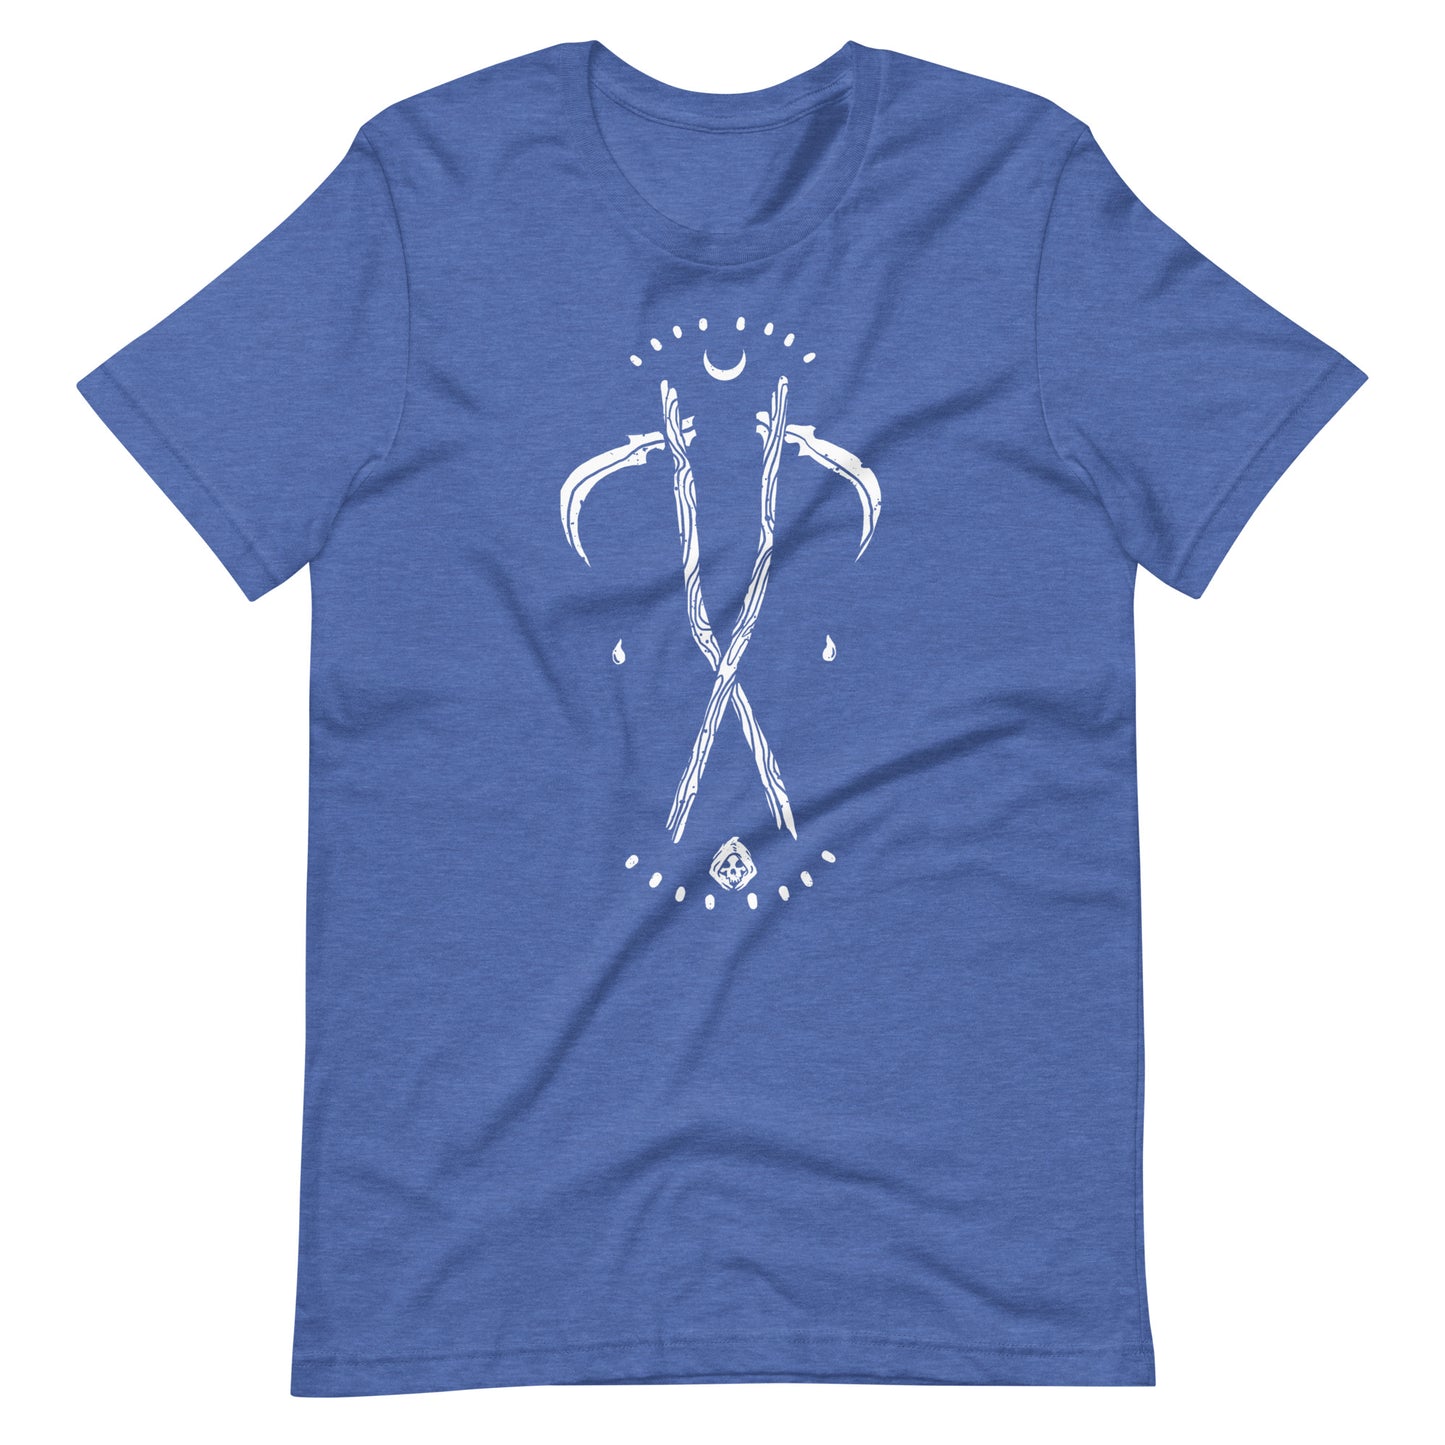 Grim - Men's t-shirt - Heather True Royal Front